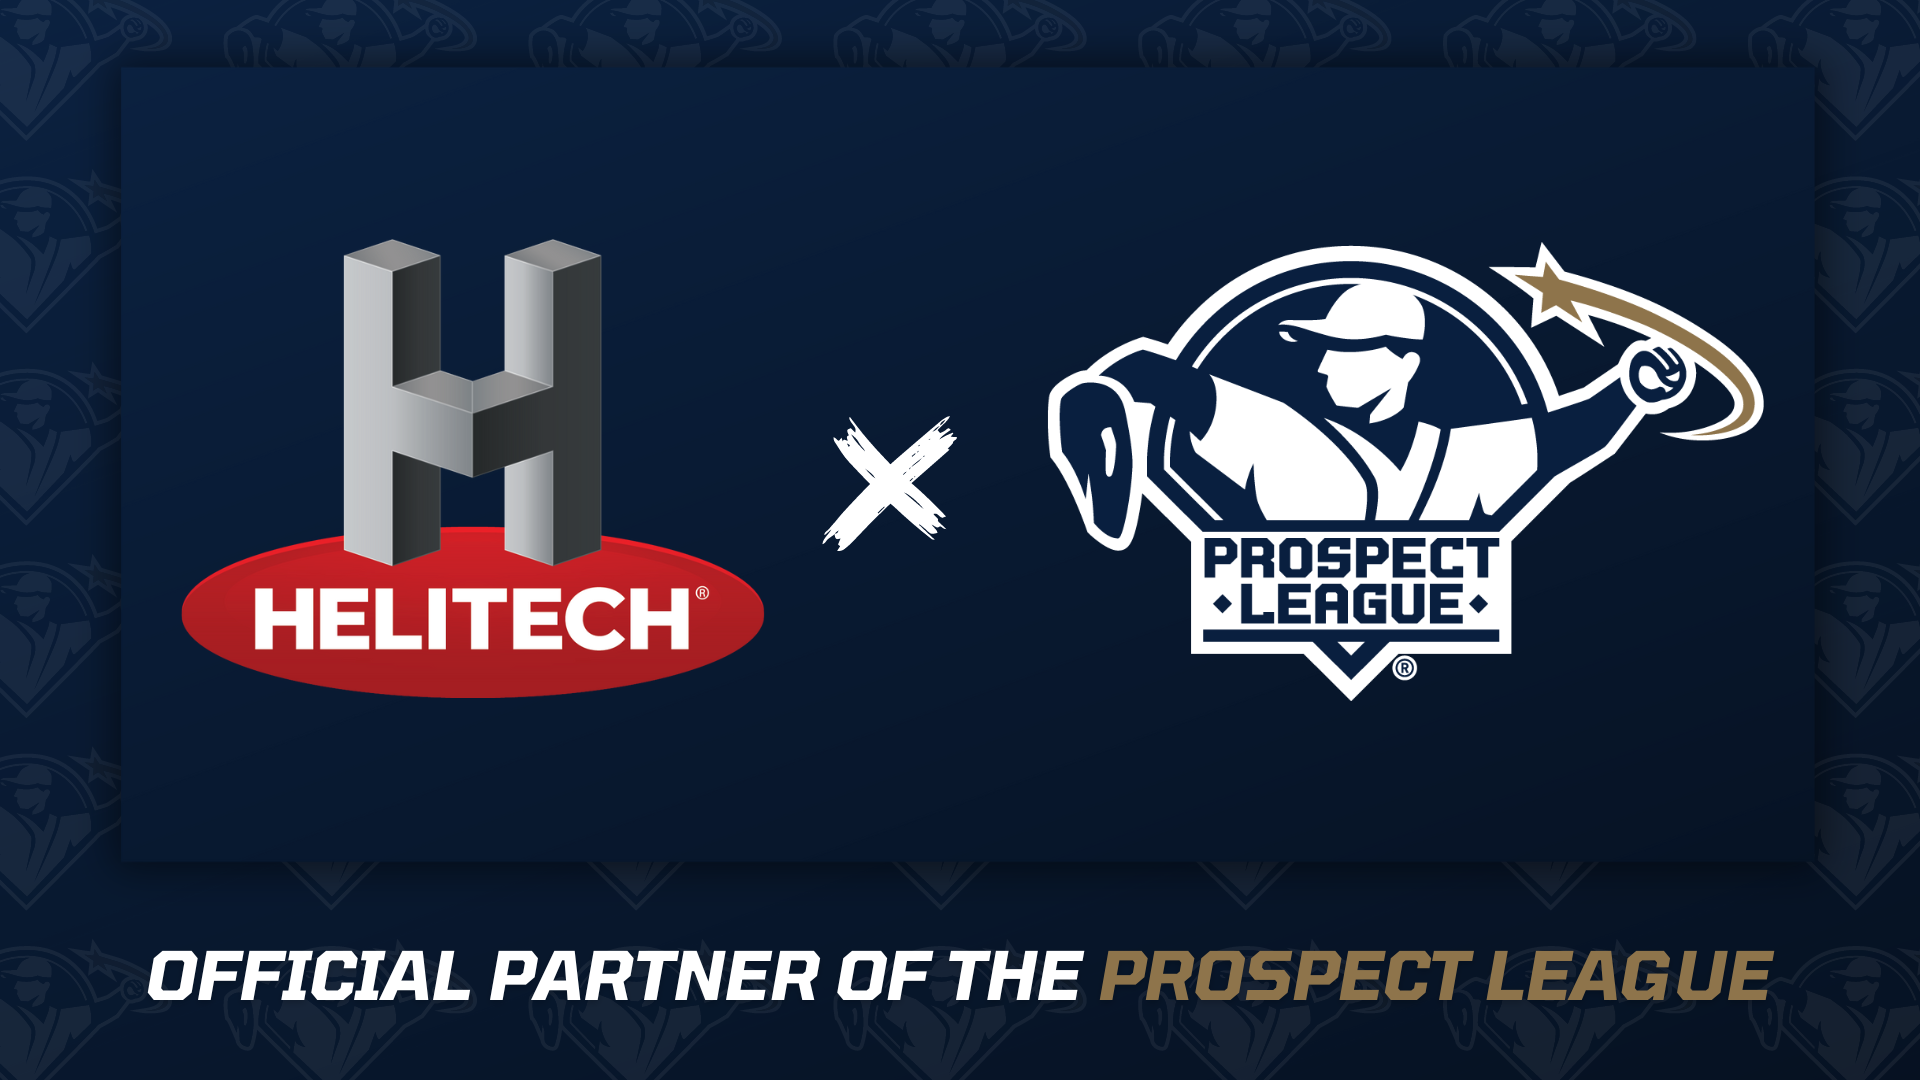 Prospect League Announces Partnership with Helitech